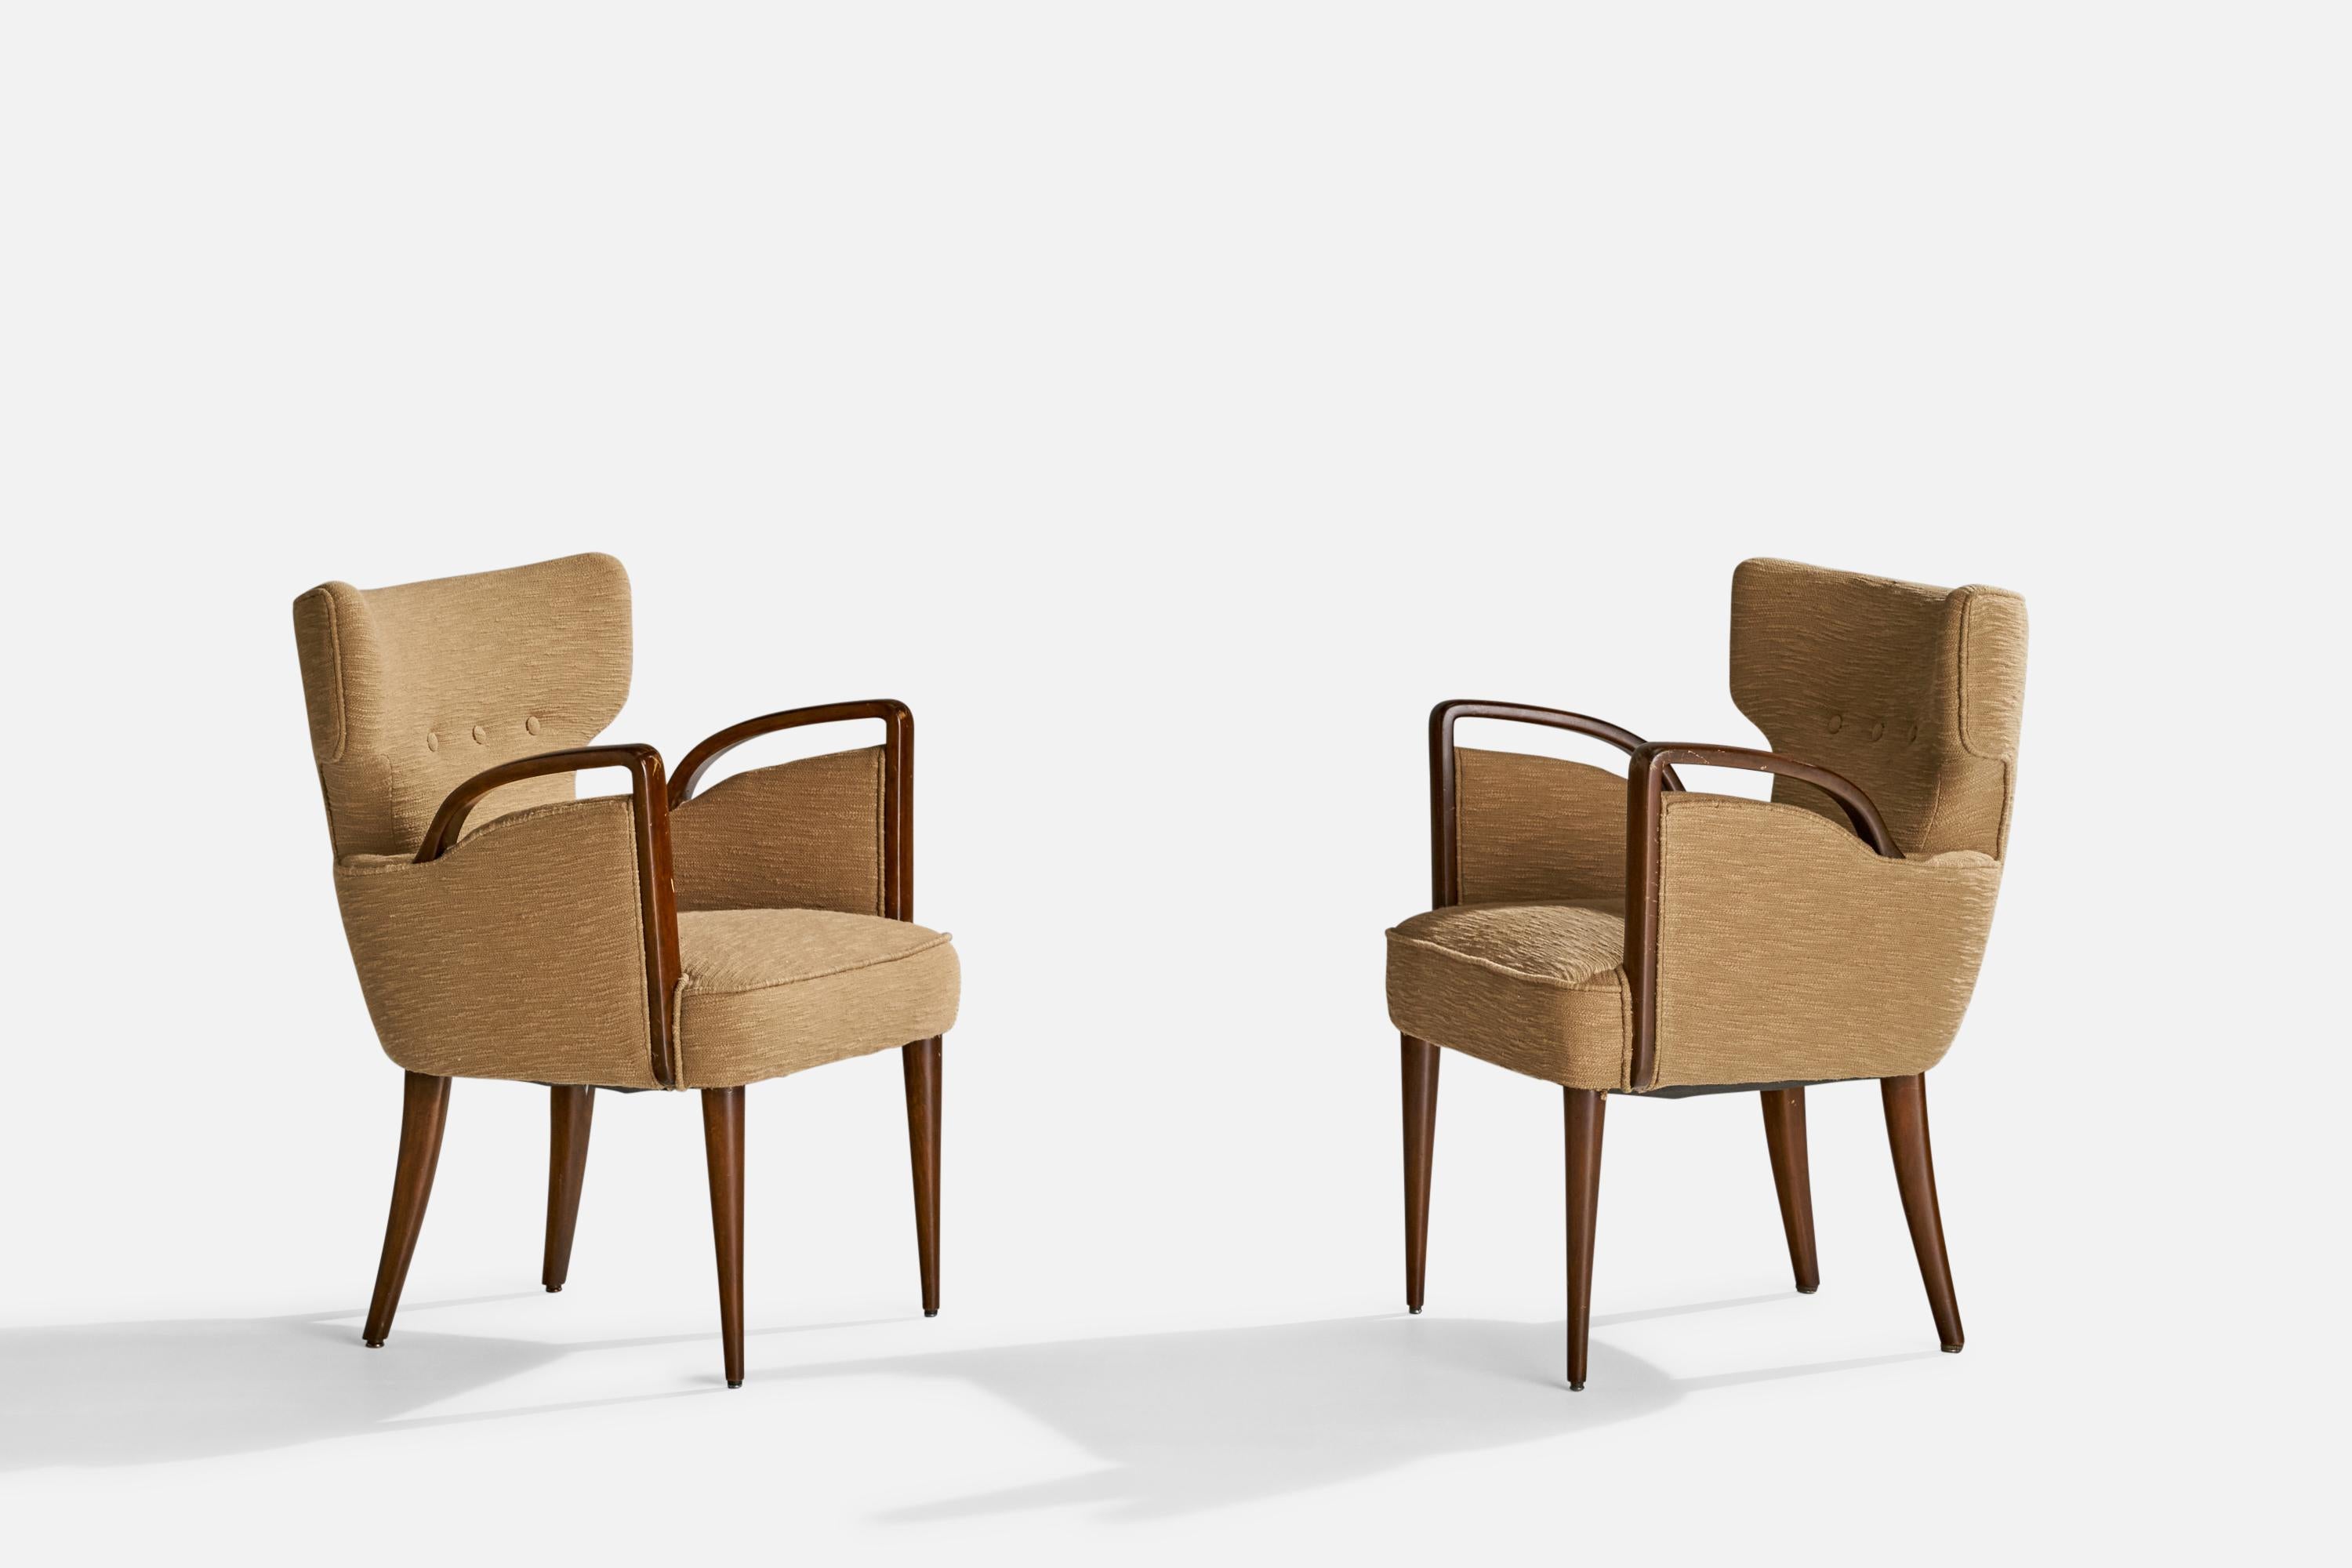 Paire de fauteuils en bois teinté foncé et tissu beige conçus par Melchiorre Bega et produits par Figli Di Amadeo Cassina, Italie, c.1949.

Hauteur d'assise 17